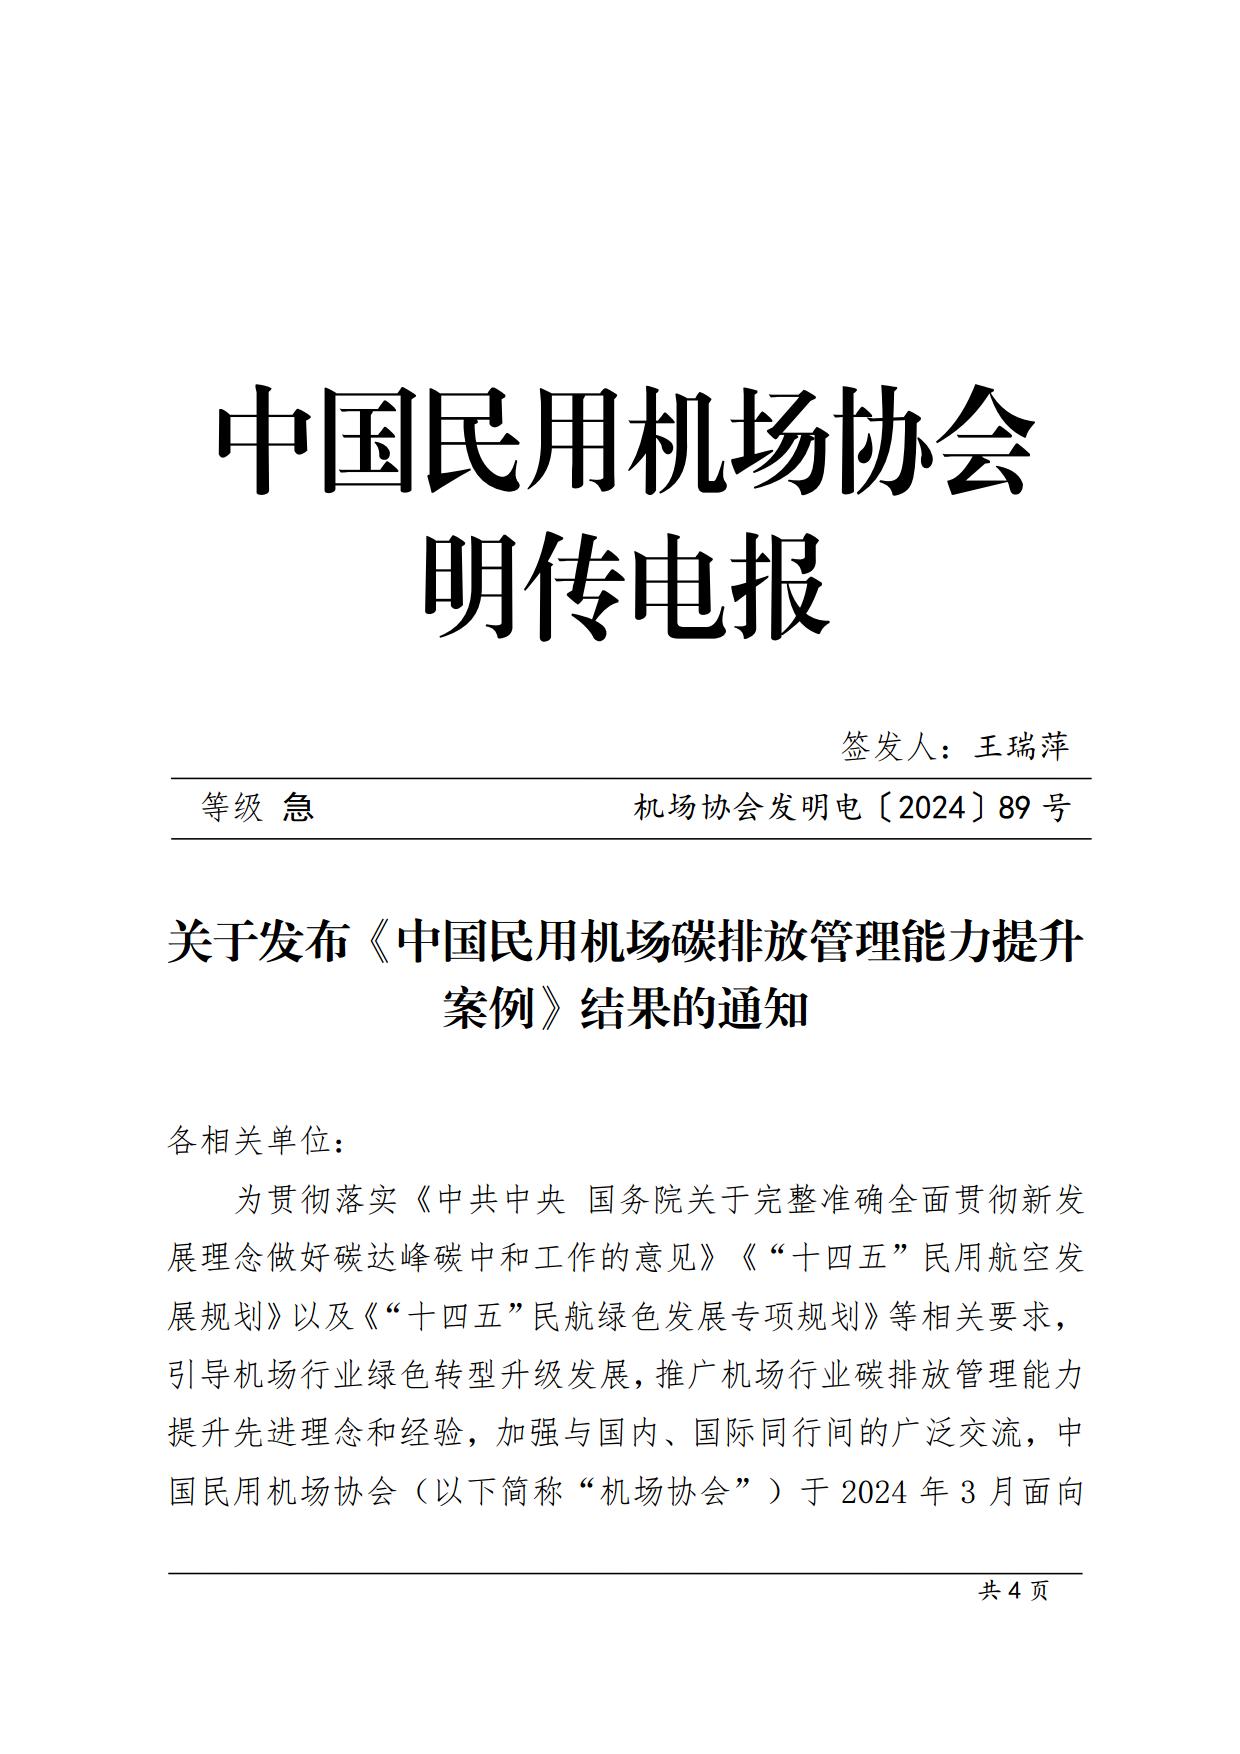 【扫描】关于《中国民用机场碳排放管理能力提升优秀案例》入选结果的通知_page1.jpg